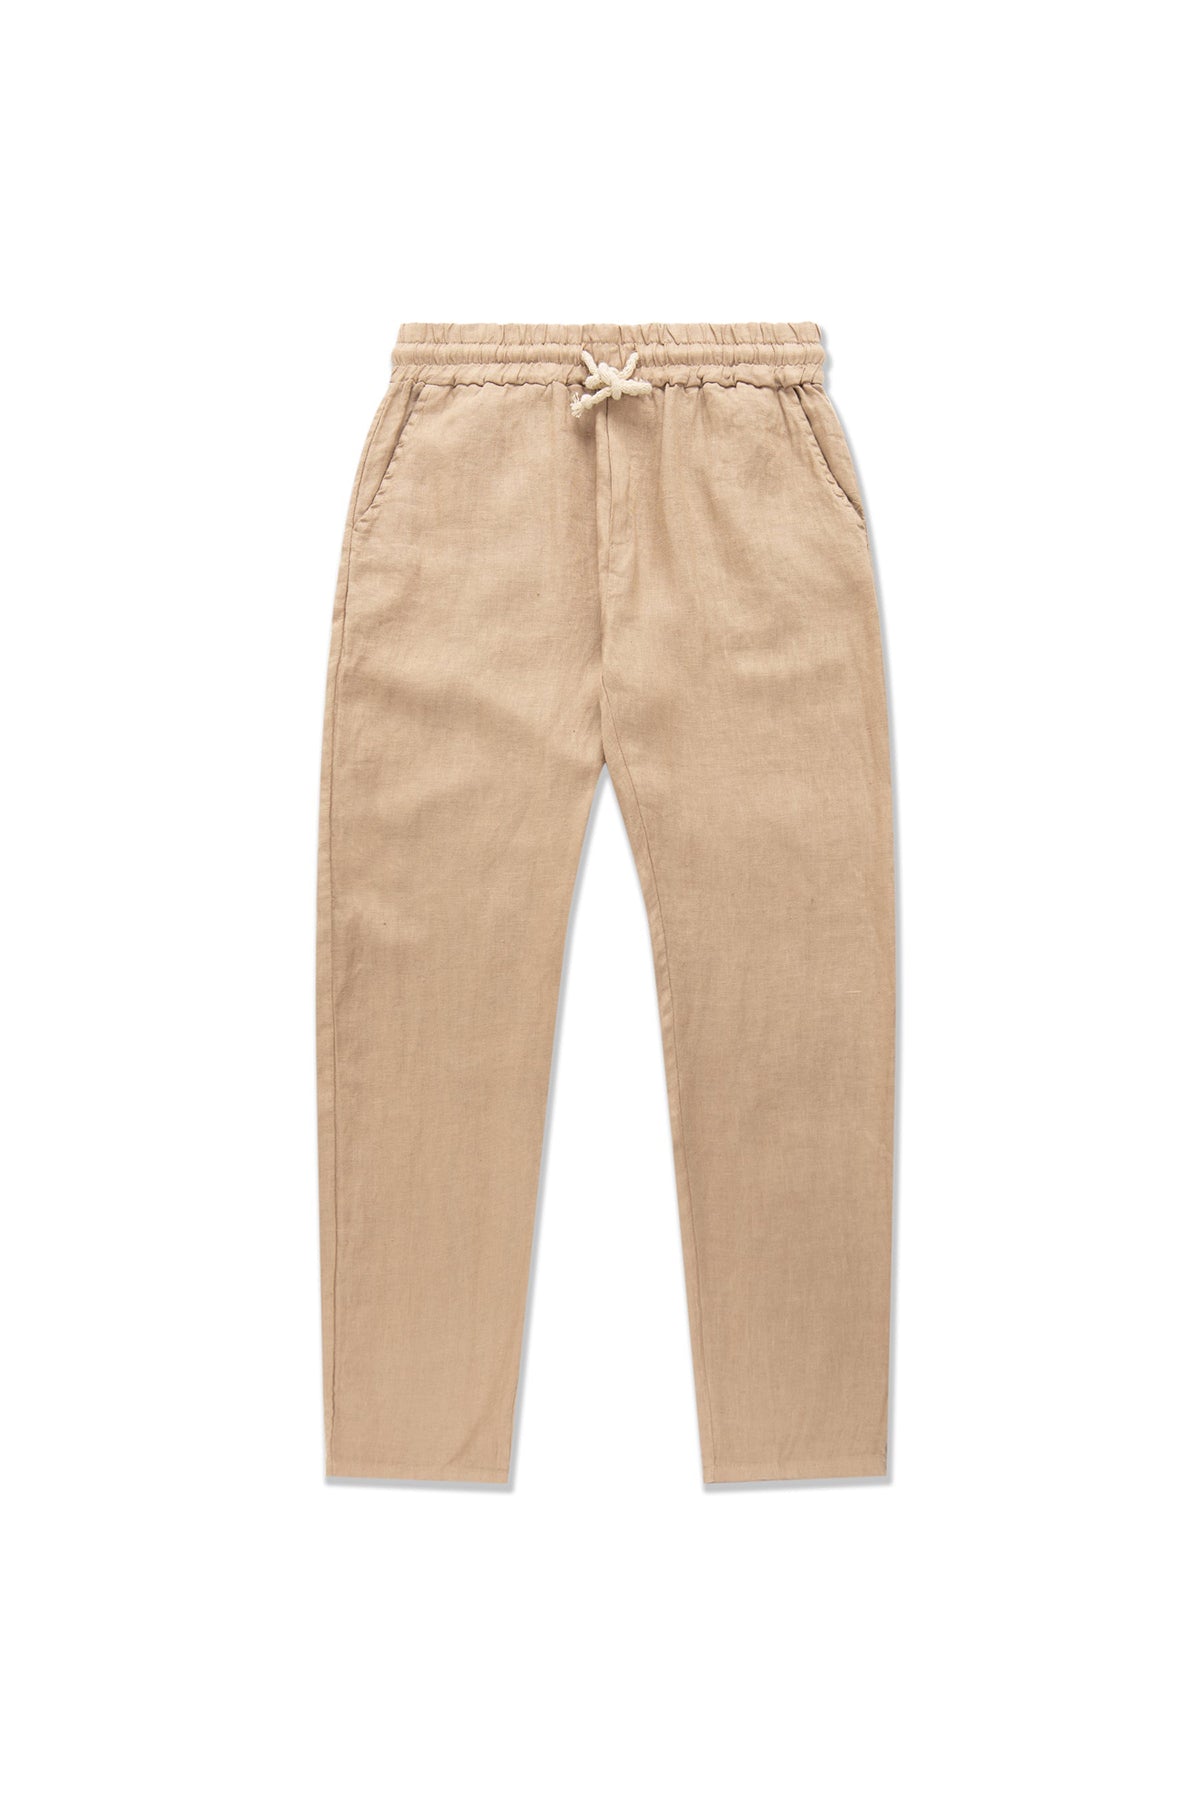 Men's Linen Pants in Navy made of Premium Linen